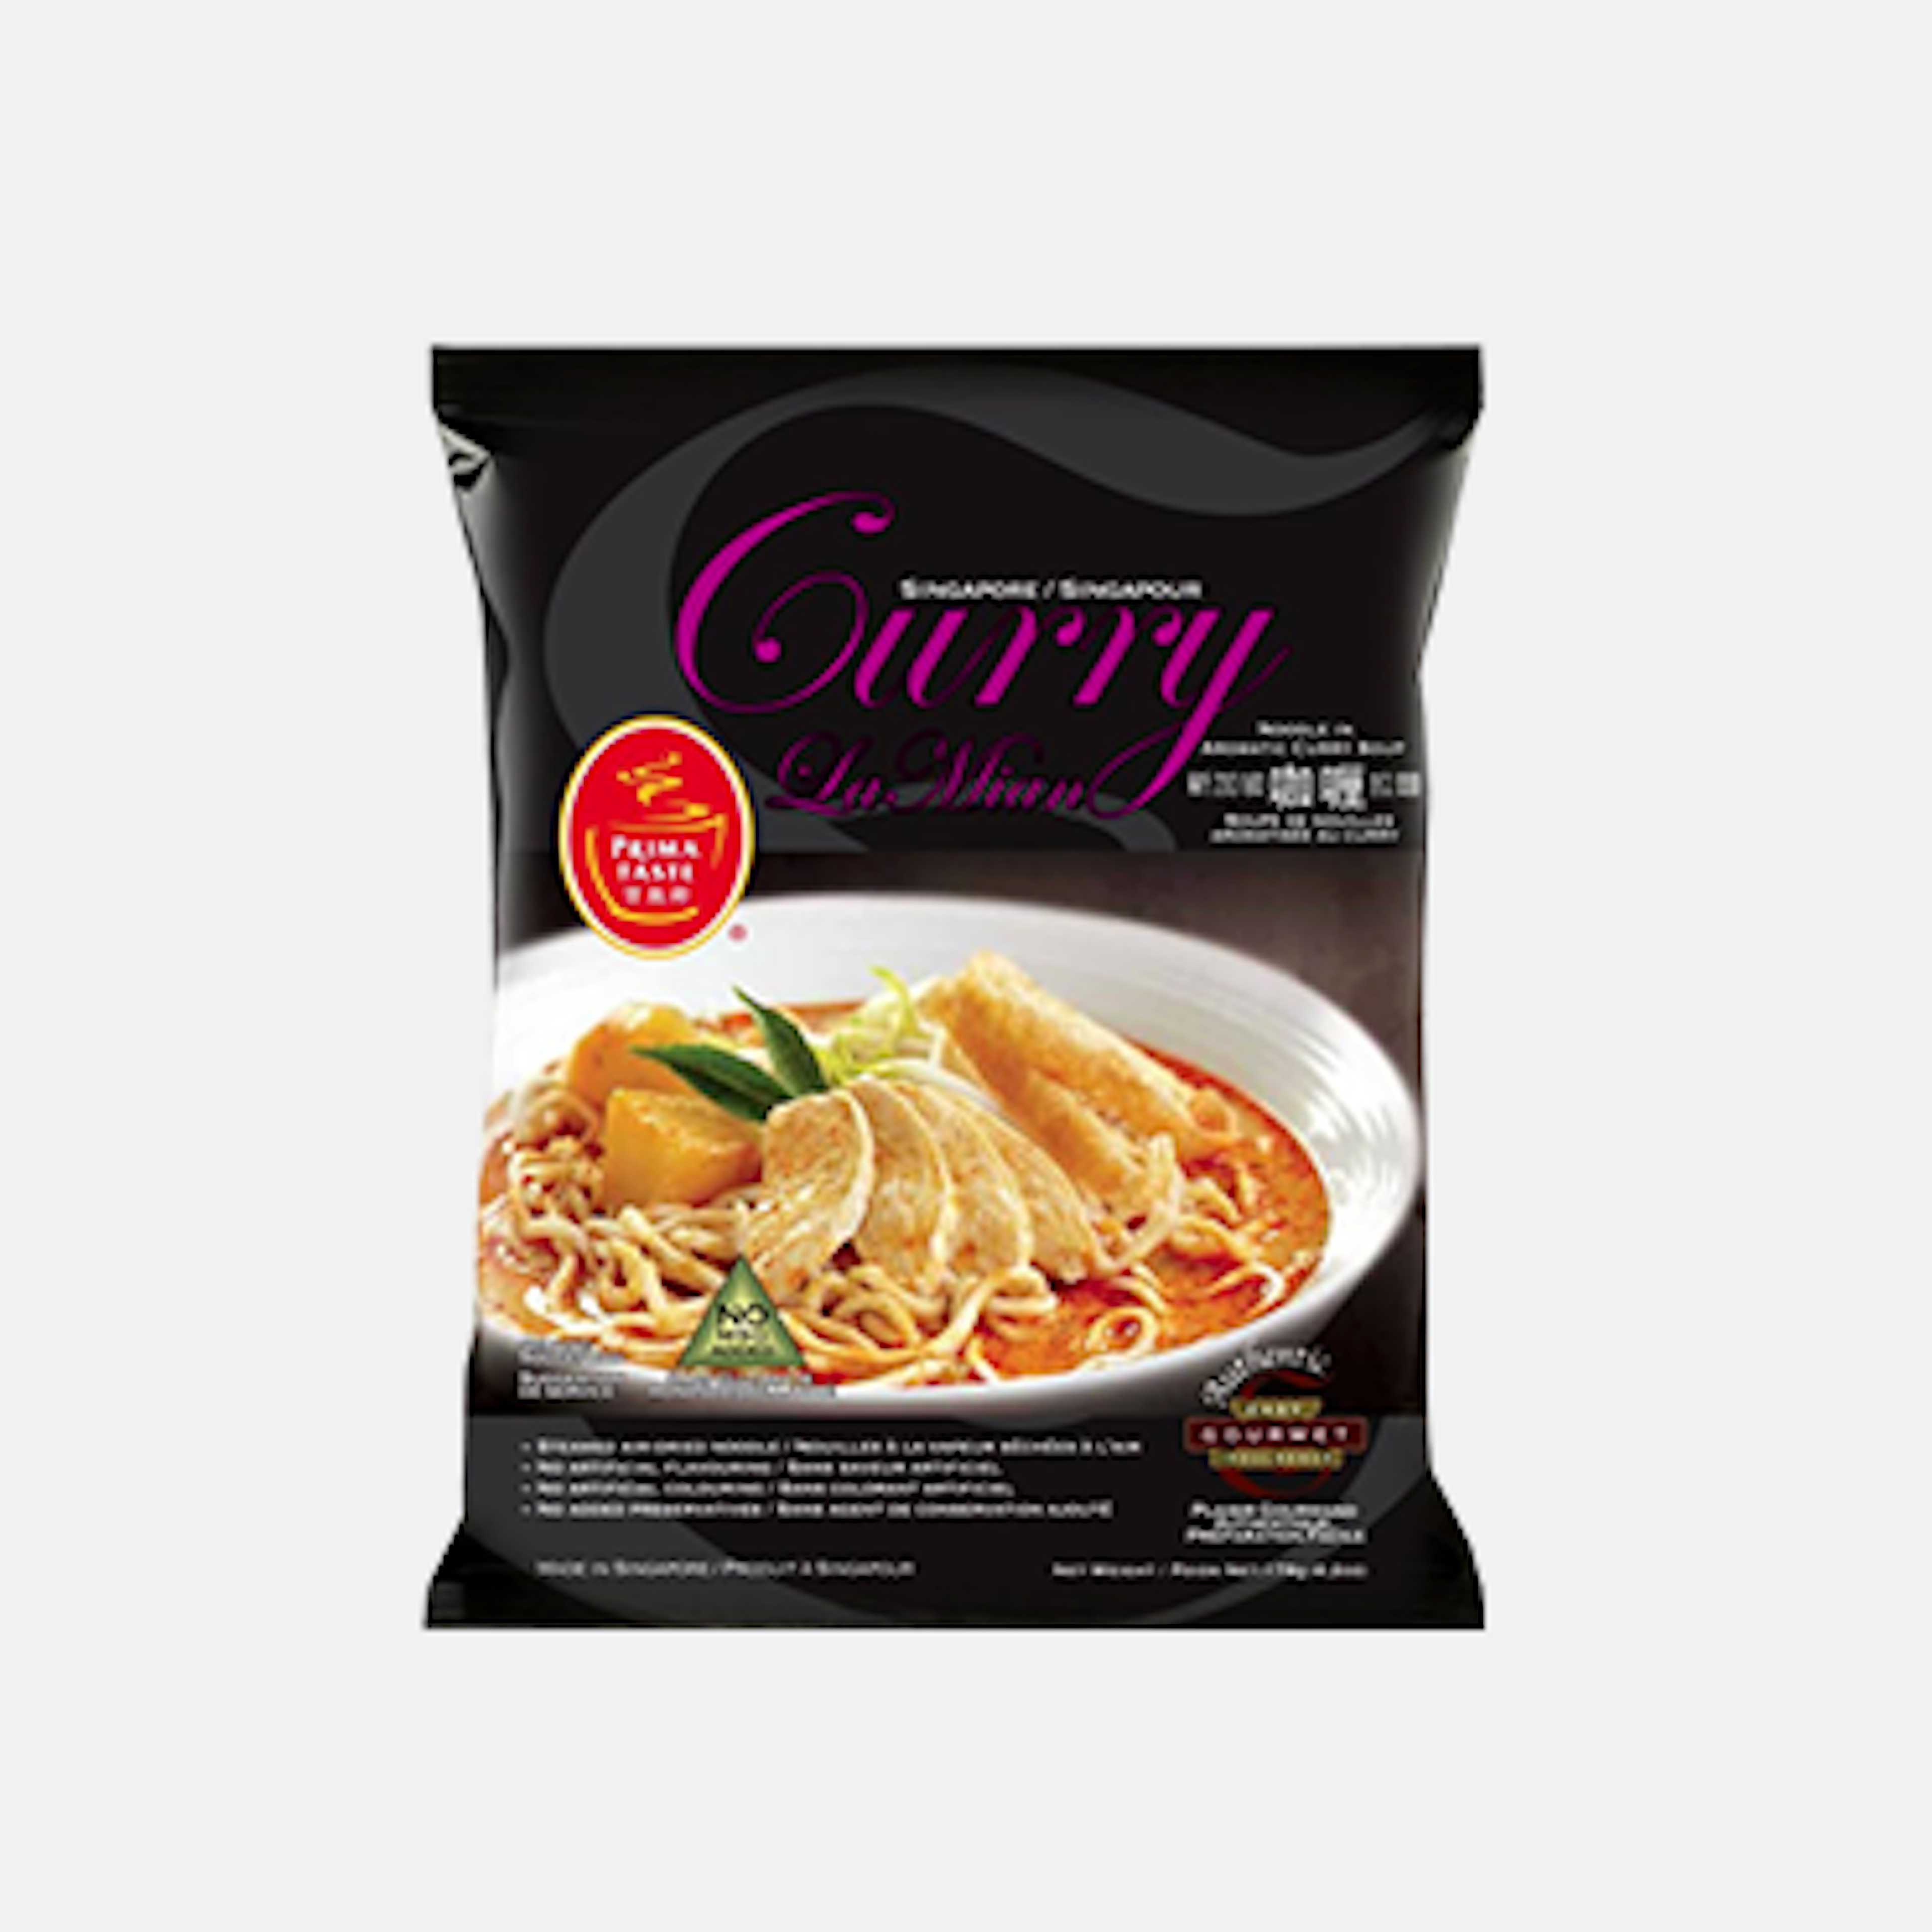 Zubereitete Singapore Curry Nudeln – dampfende, aromatische Nudeln, servierfertig in einer Schüssel